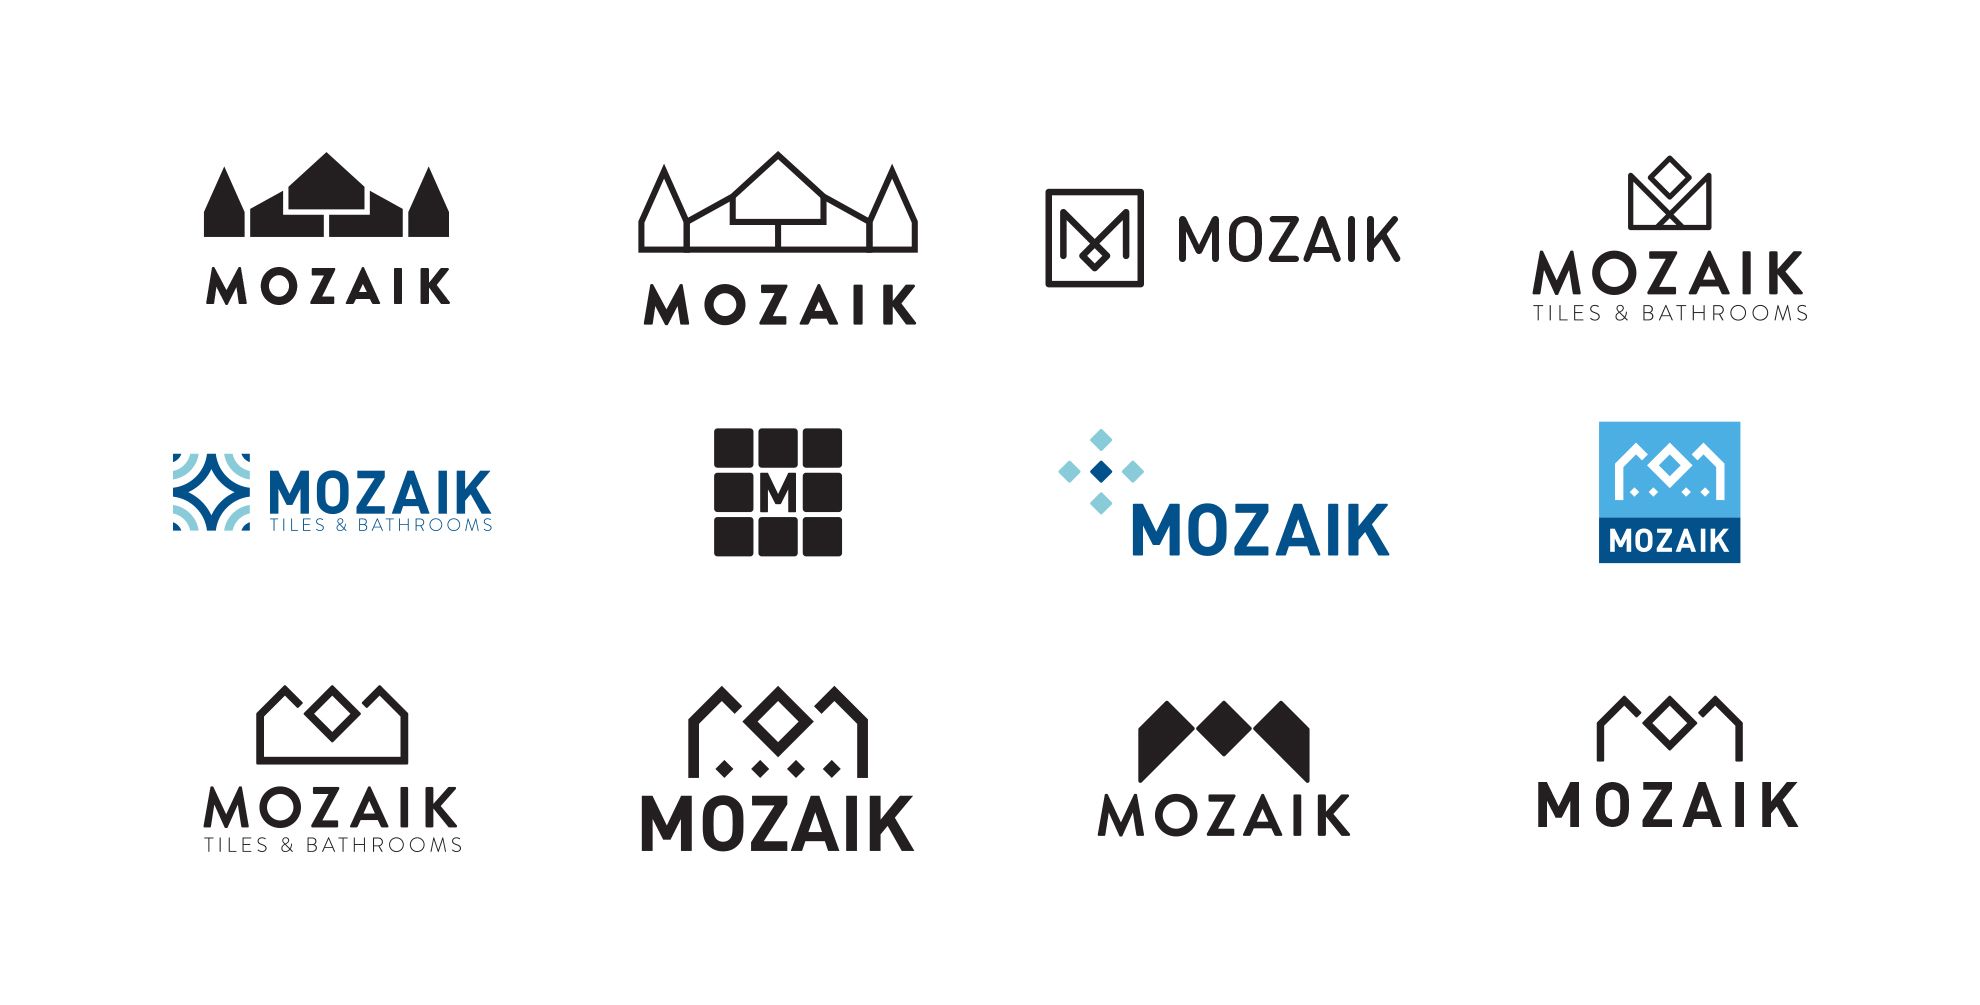 Mozaik logo first concepts